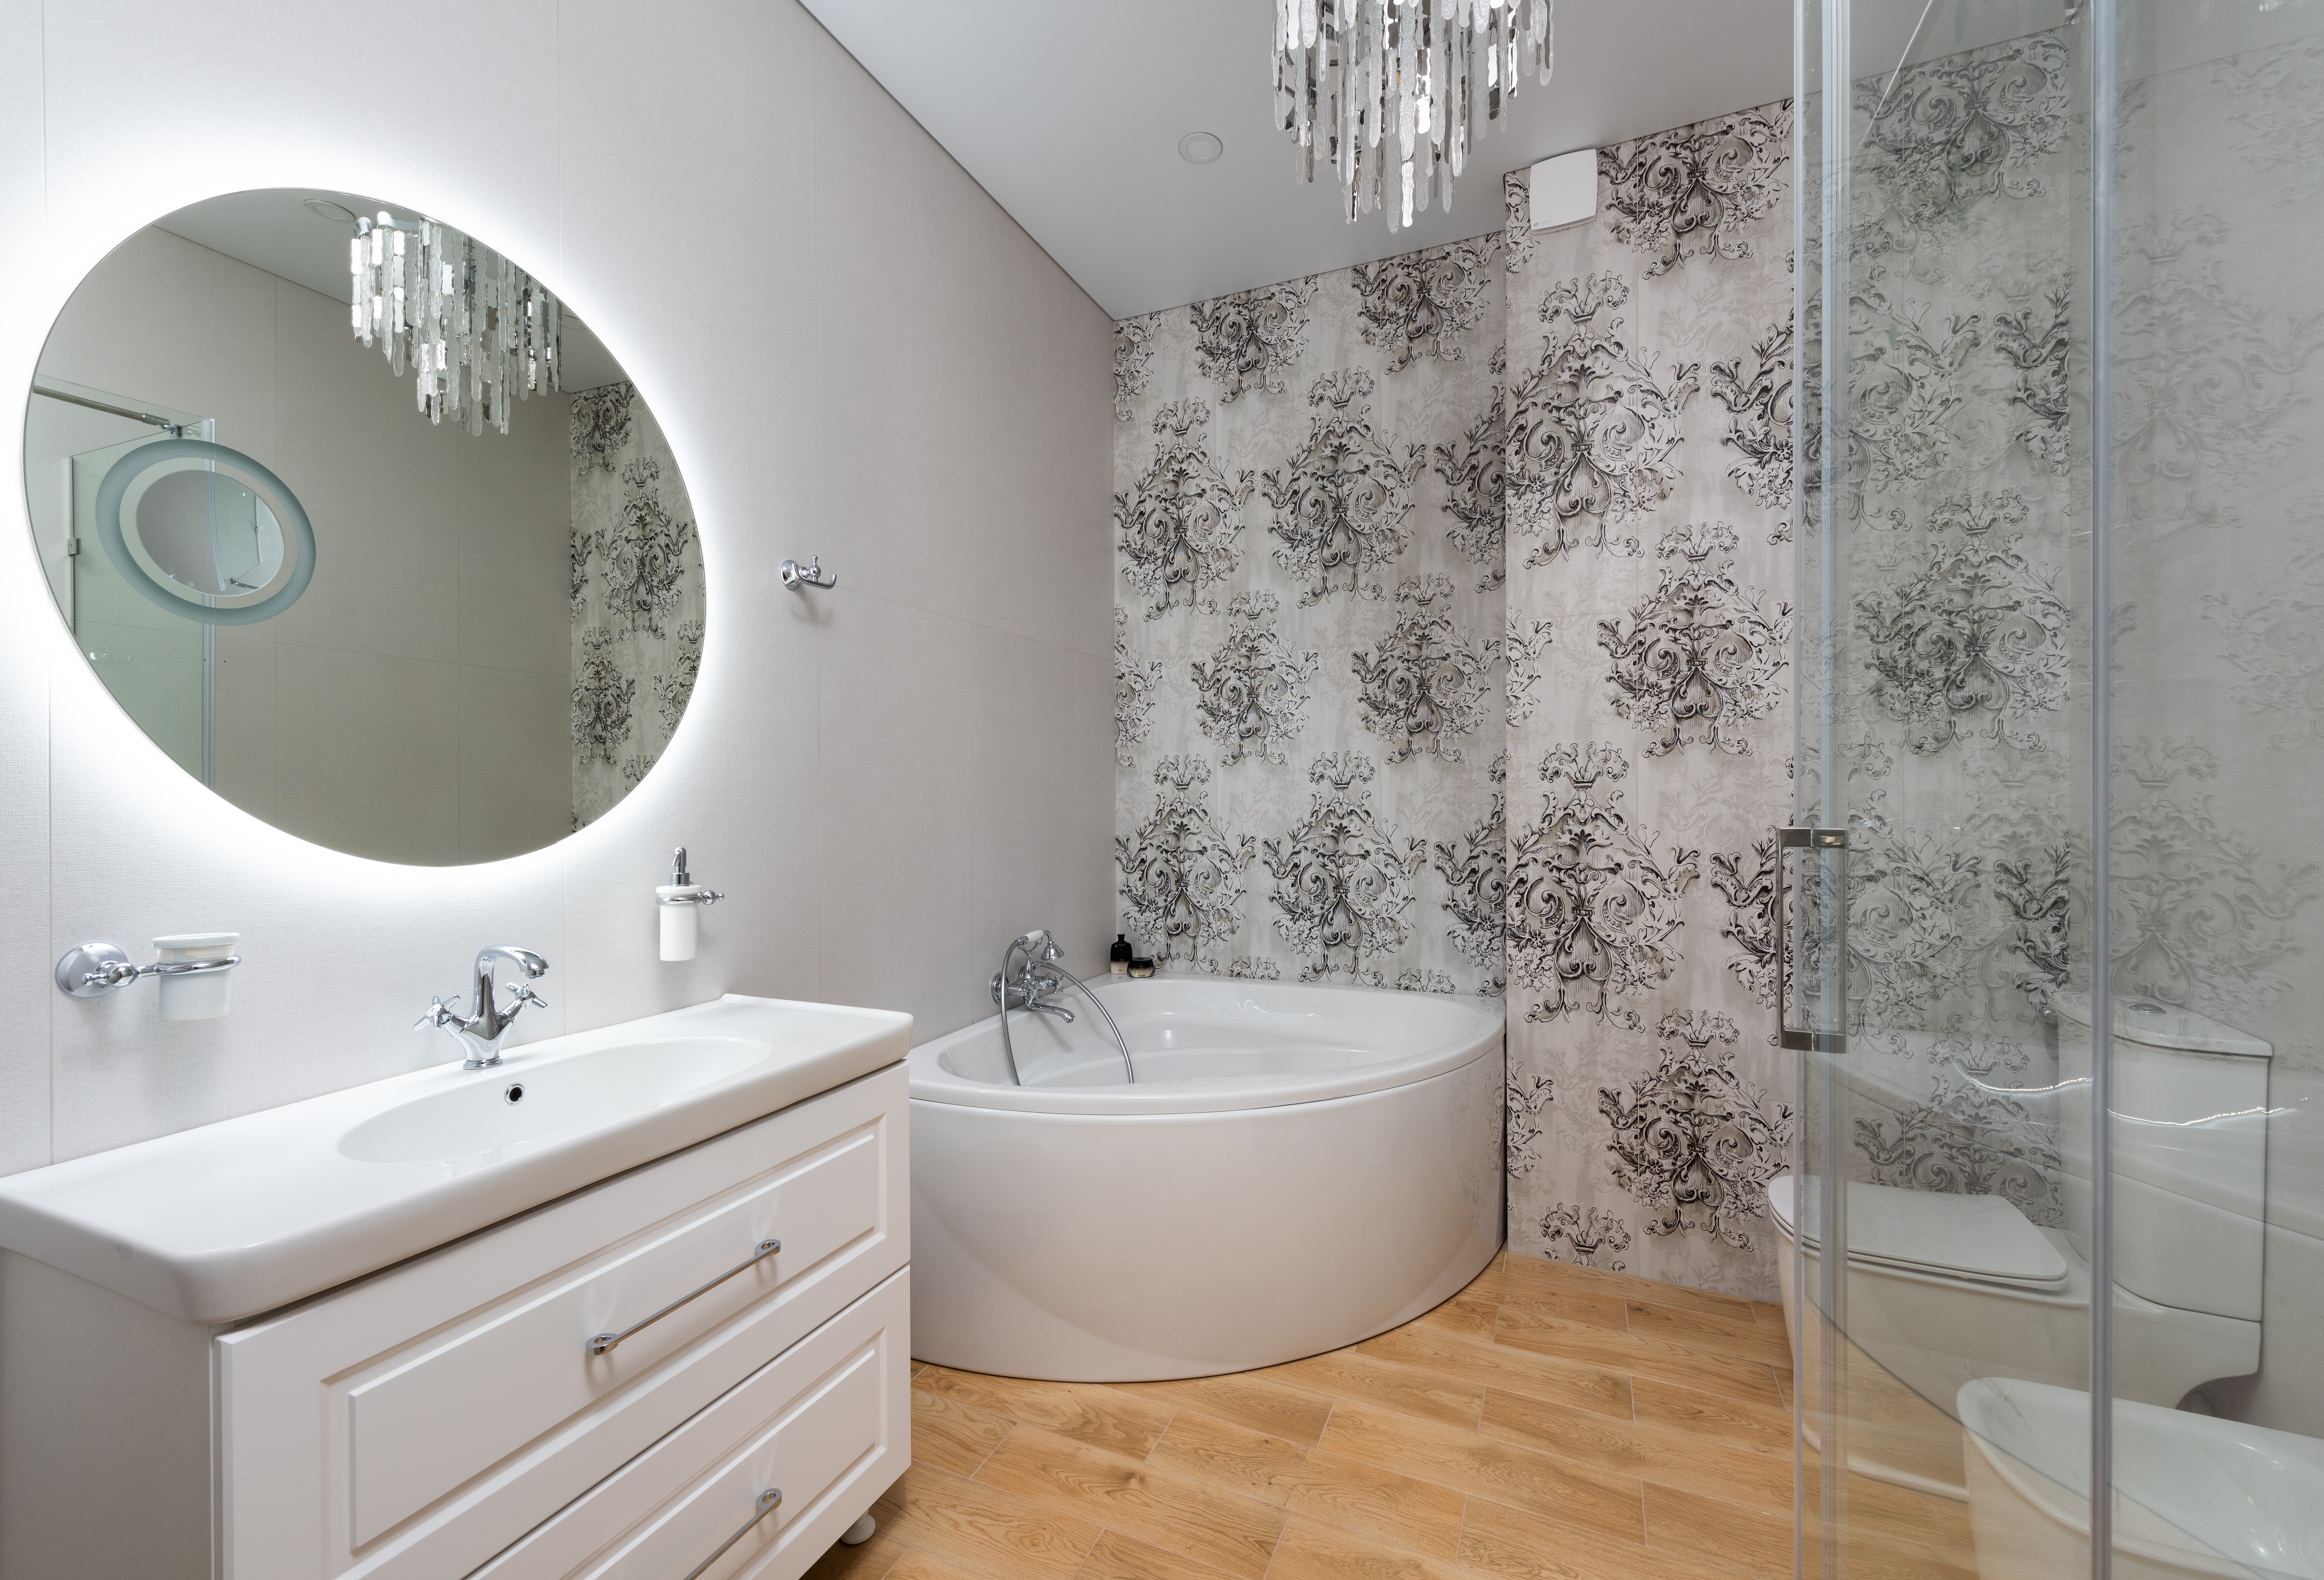 Пример освещения ванной комнаты с отделкой преимущественно в белом цвете.